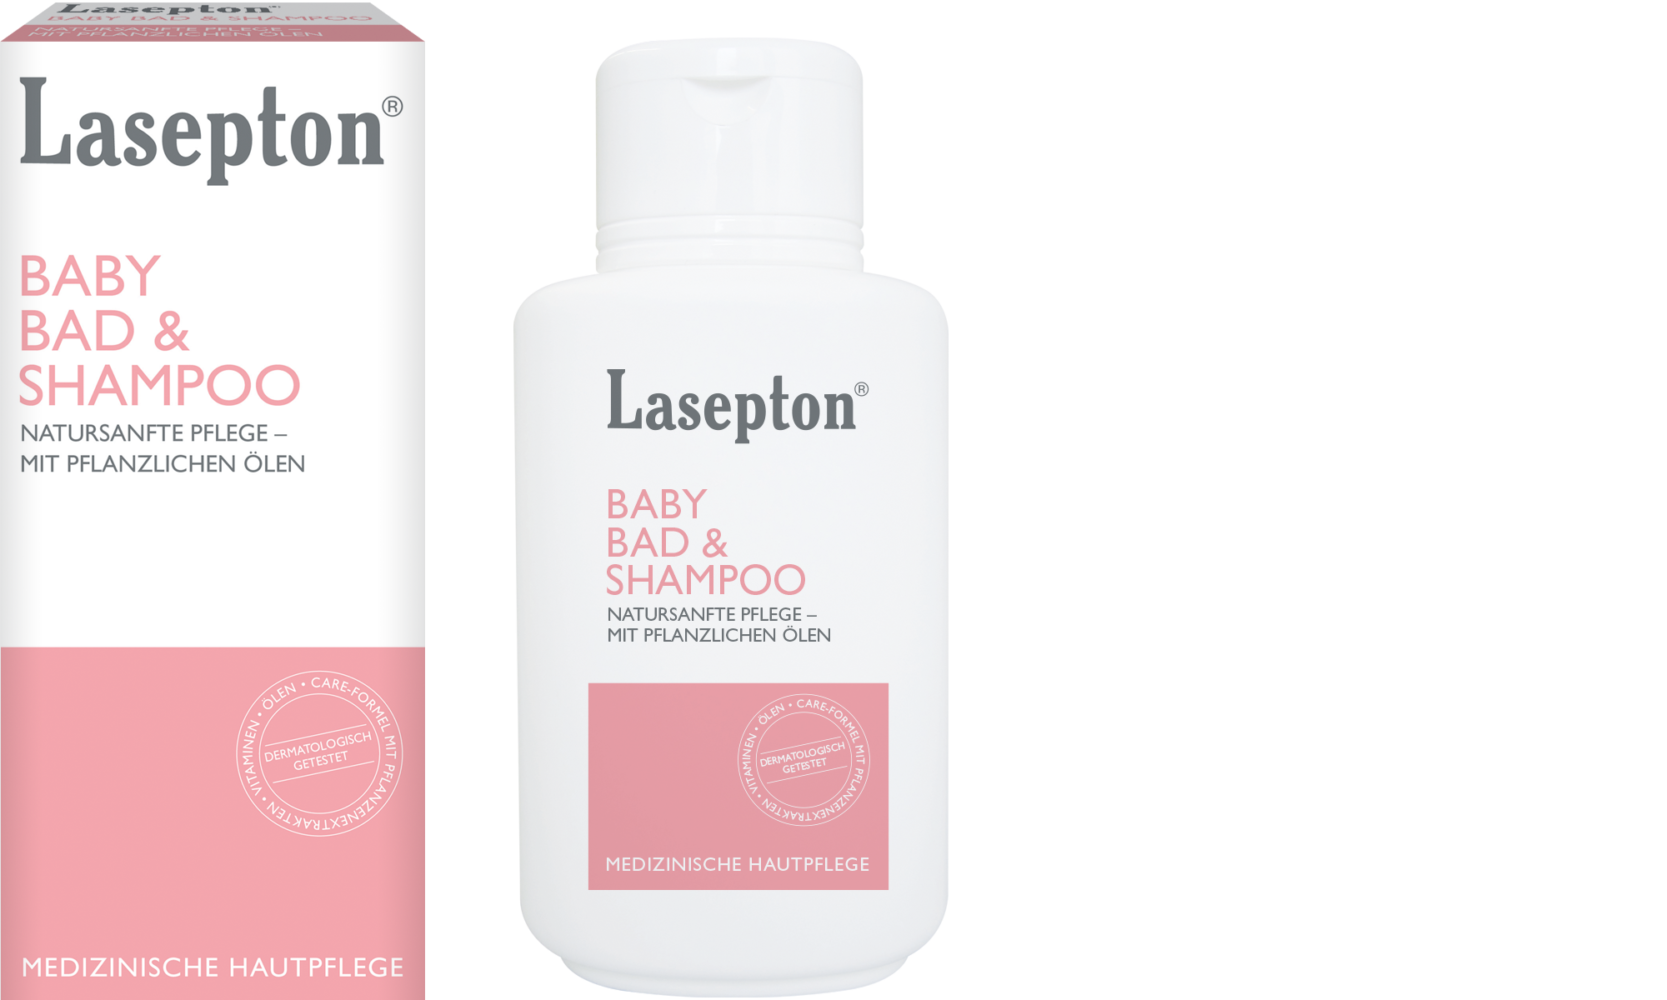 Lasepton® Baby Bad & Shampoo; natursanfte Pflege - mit pflanzlichen Ölen